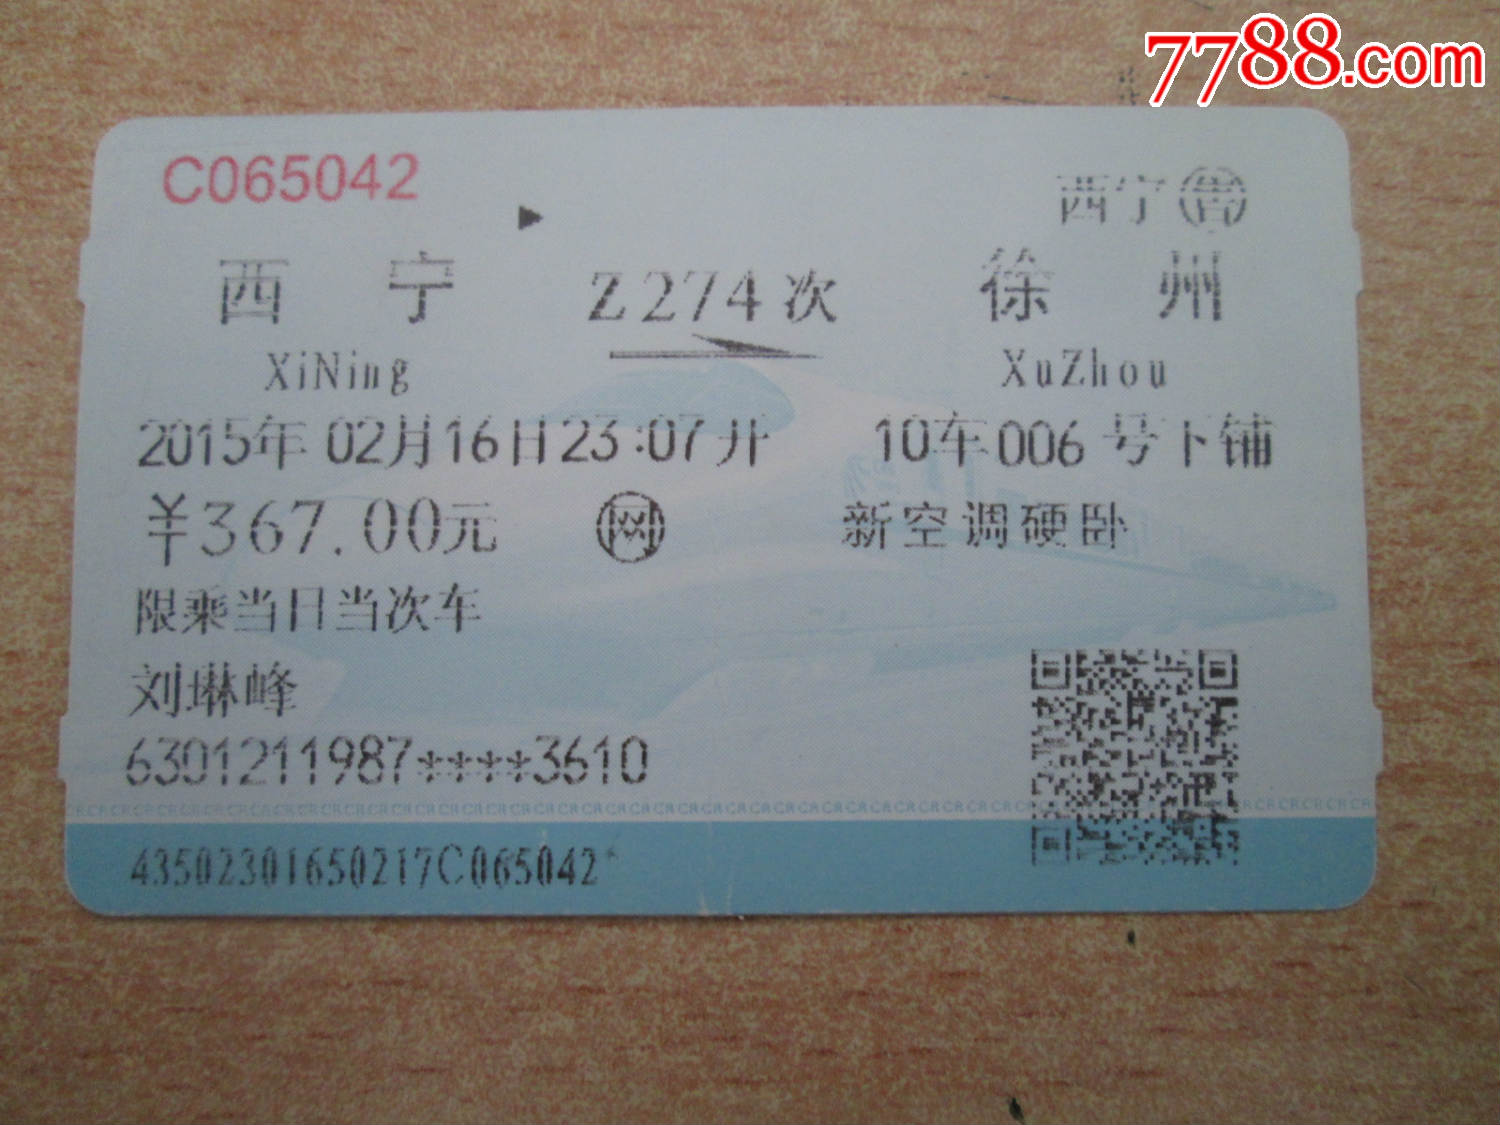 西宁z274徐州-se42428837-火车票-零售-7788收藏__中国收藏热线